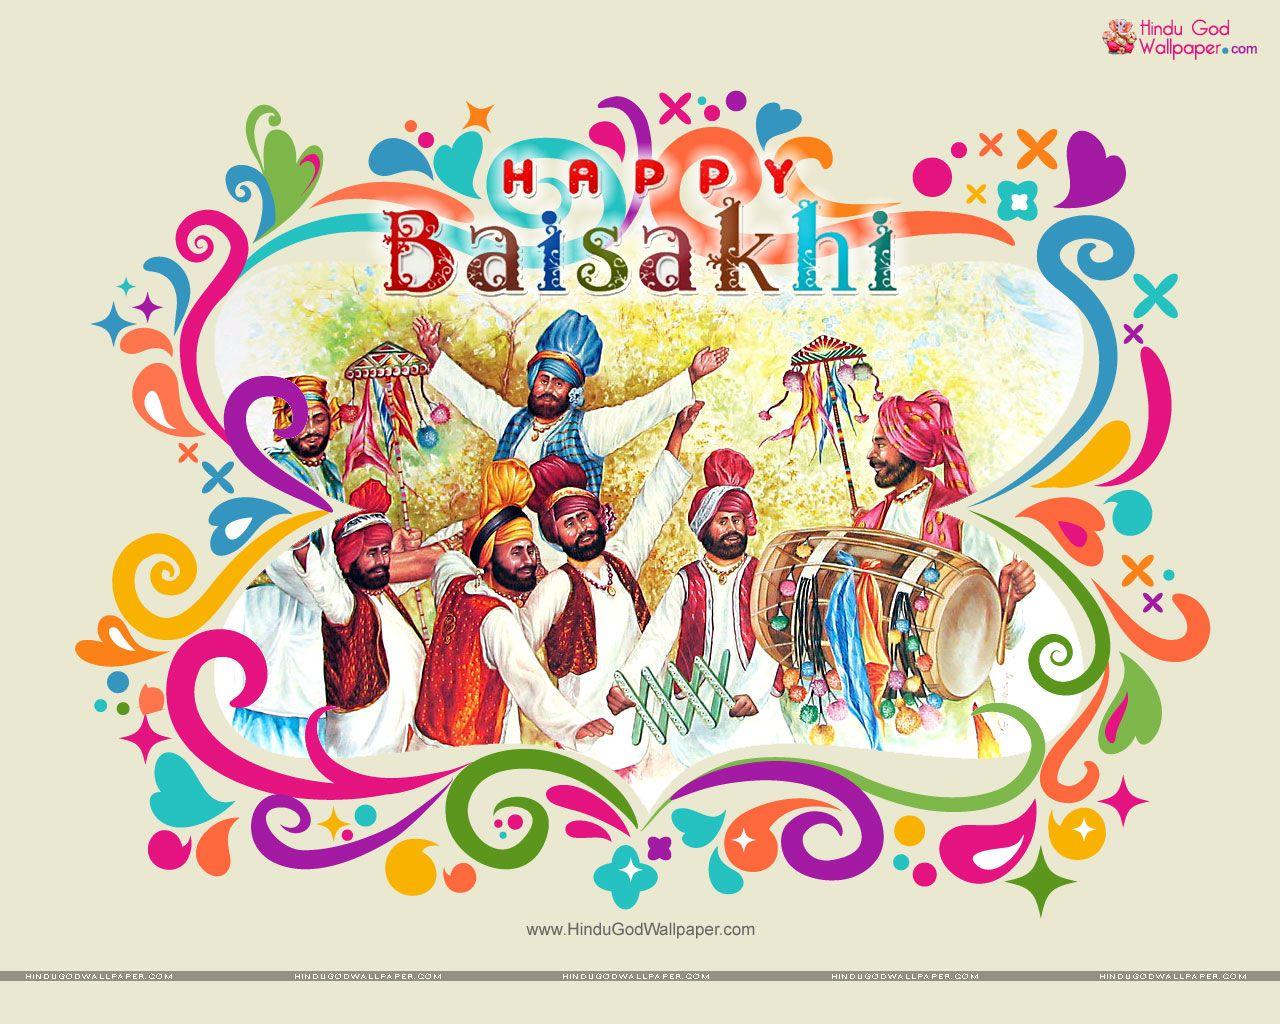 Baisakhi HD Wallpaper, Picture and Photo Download. Baisakhi